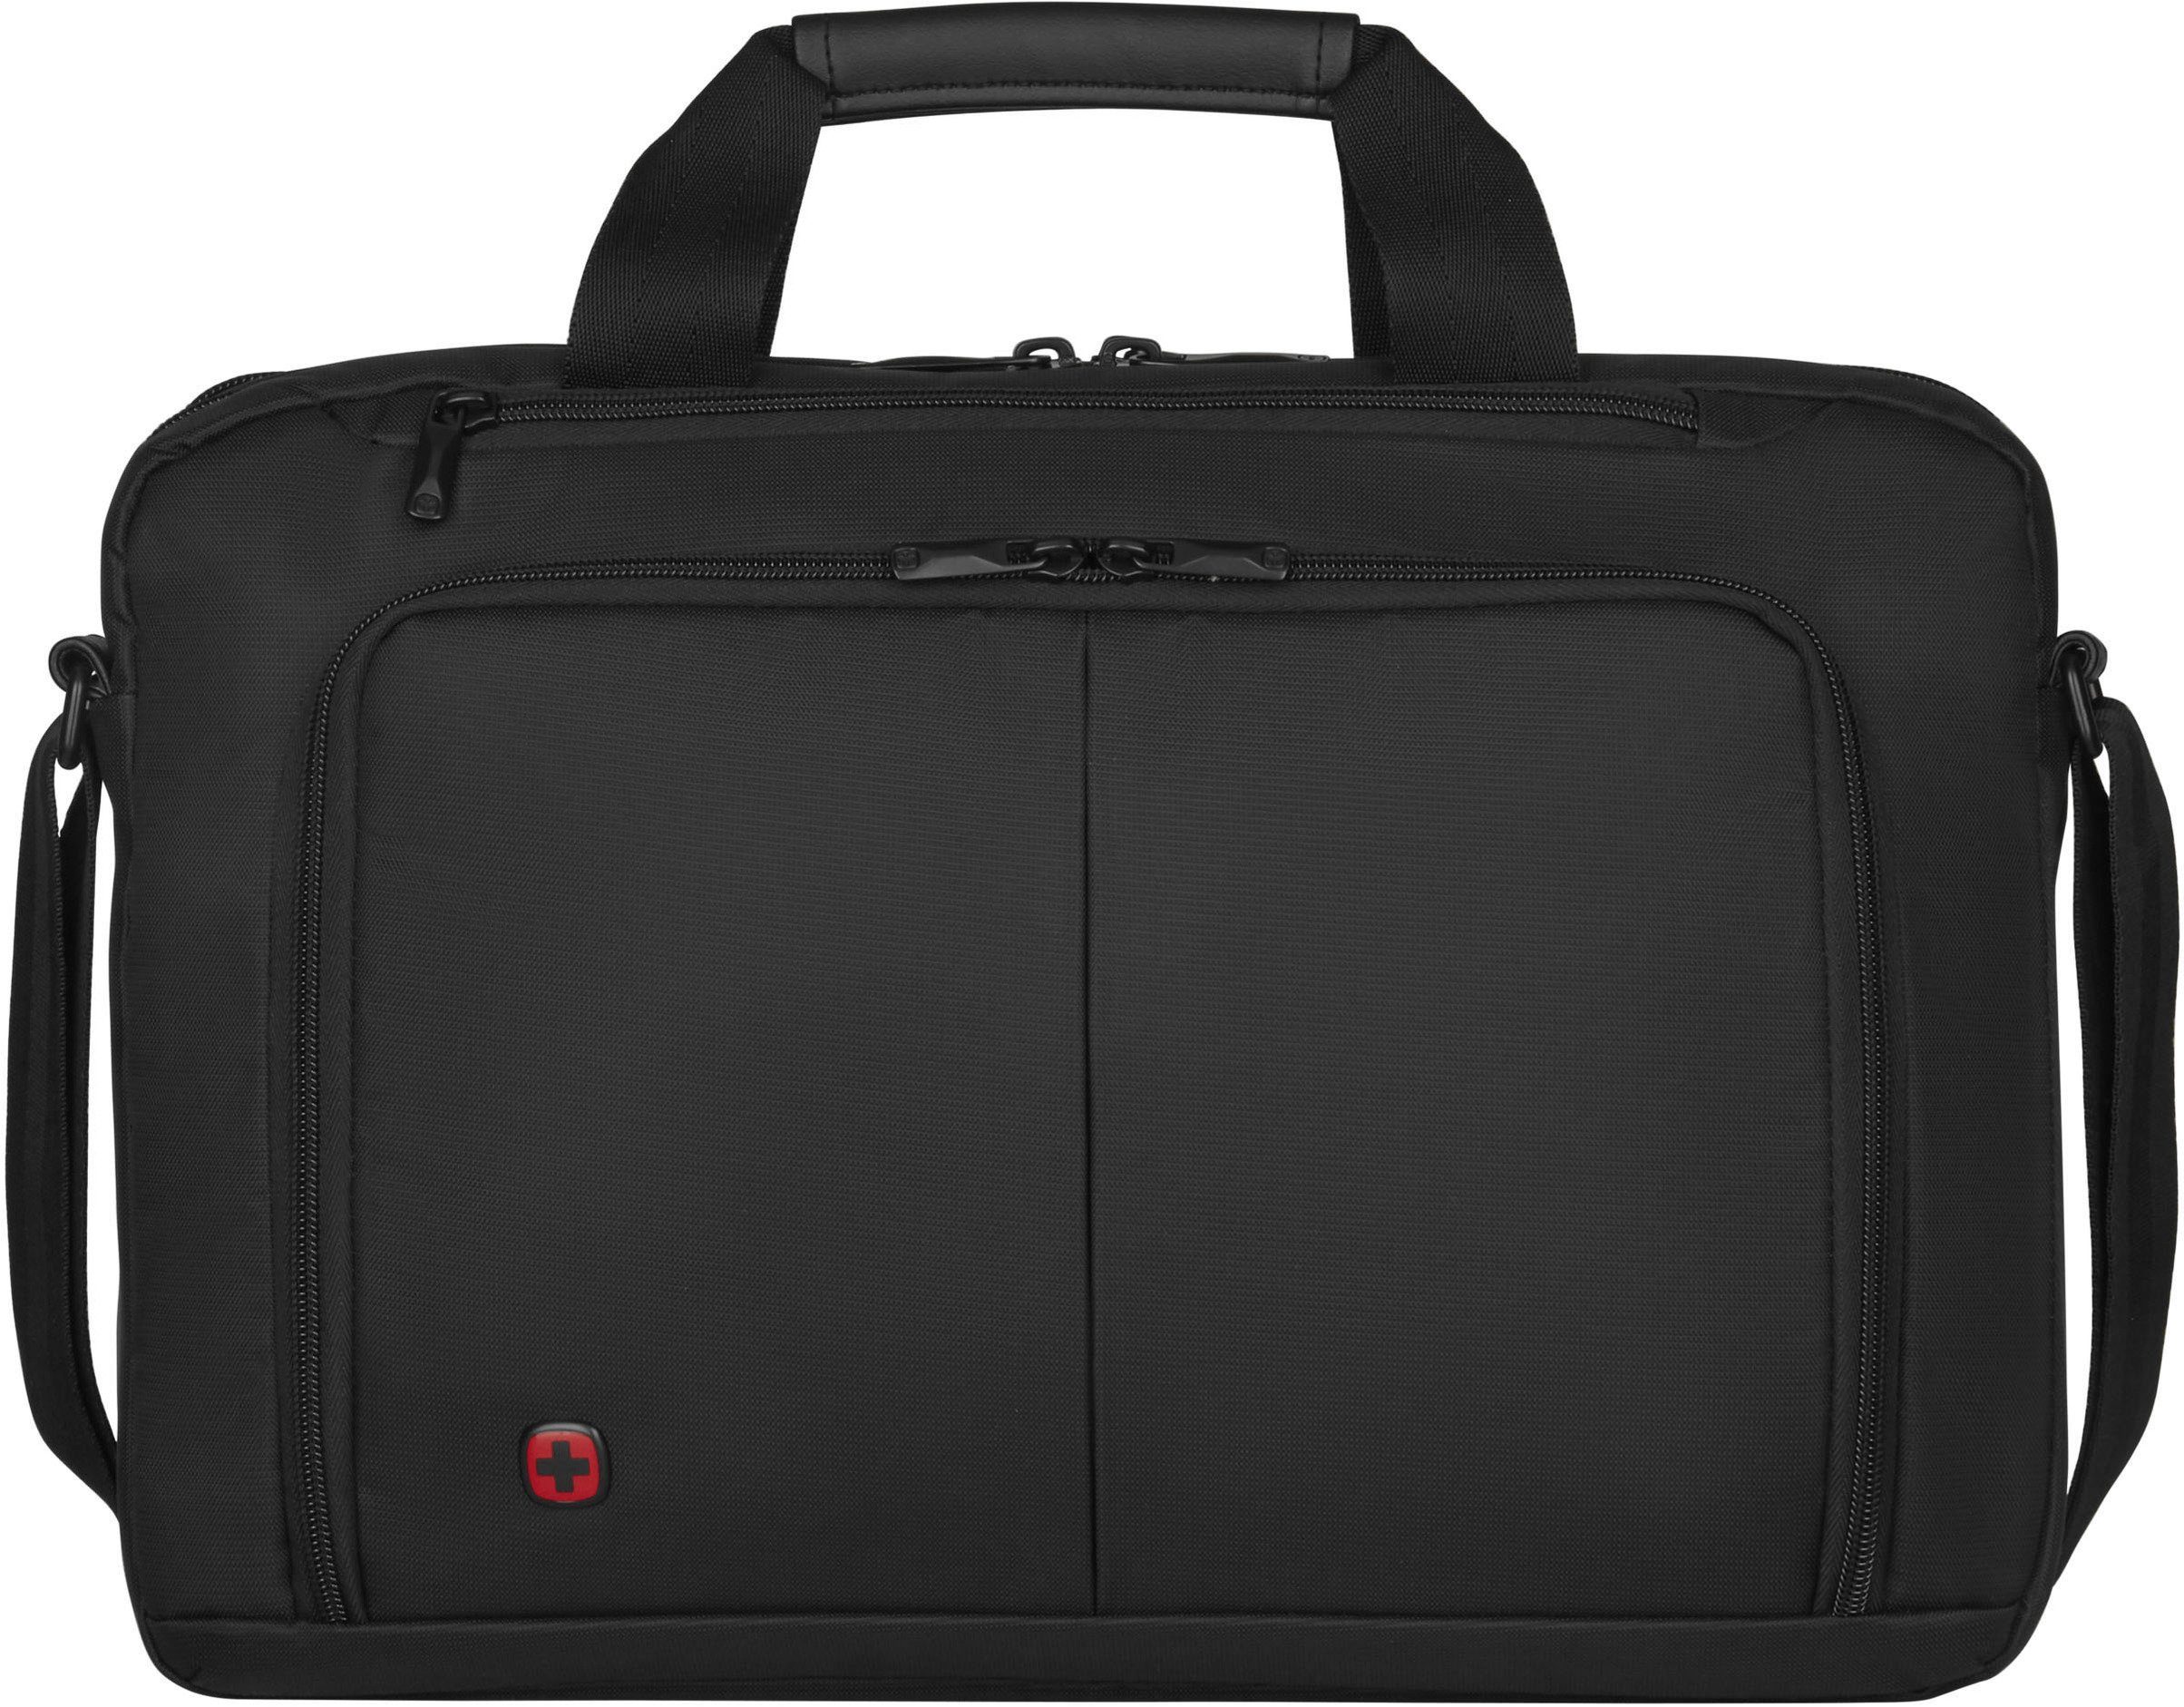 schwarz, Laptoptasche Tabletfach 10-Zoll 16-Zoll Wenger Source, mit zusätzlichem Laptopfach und